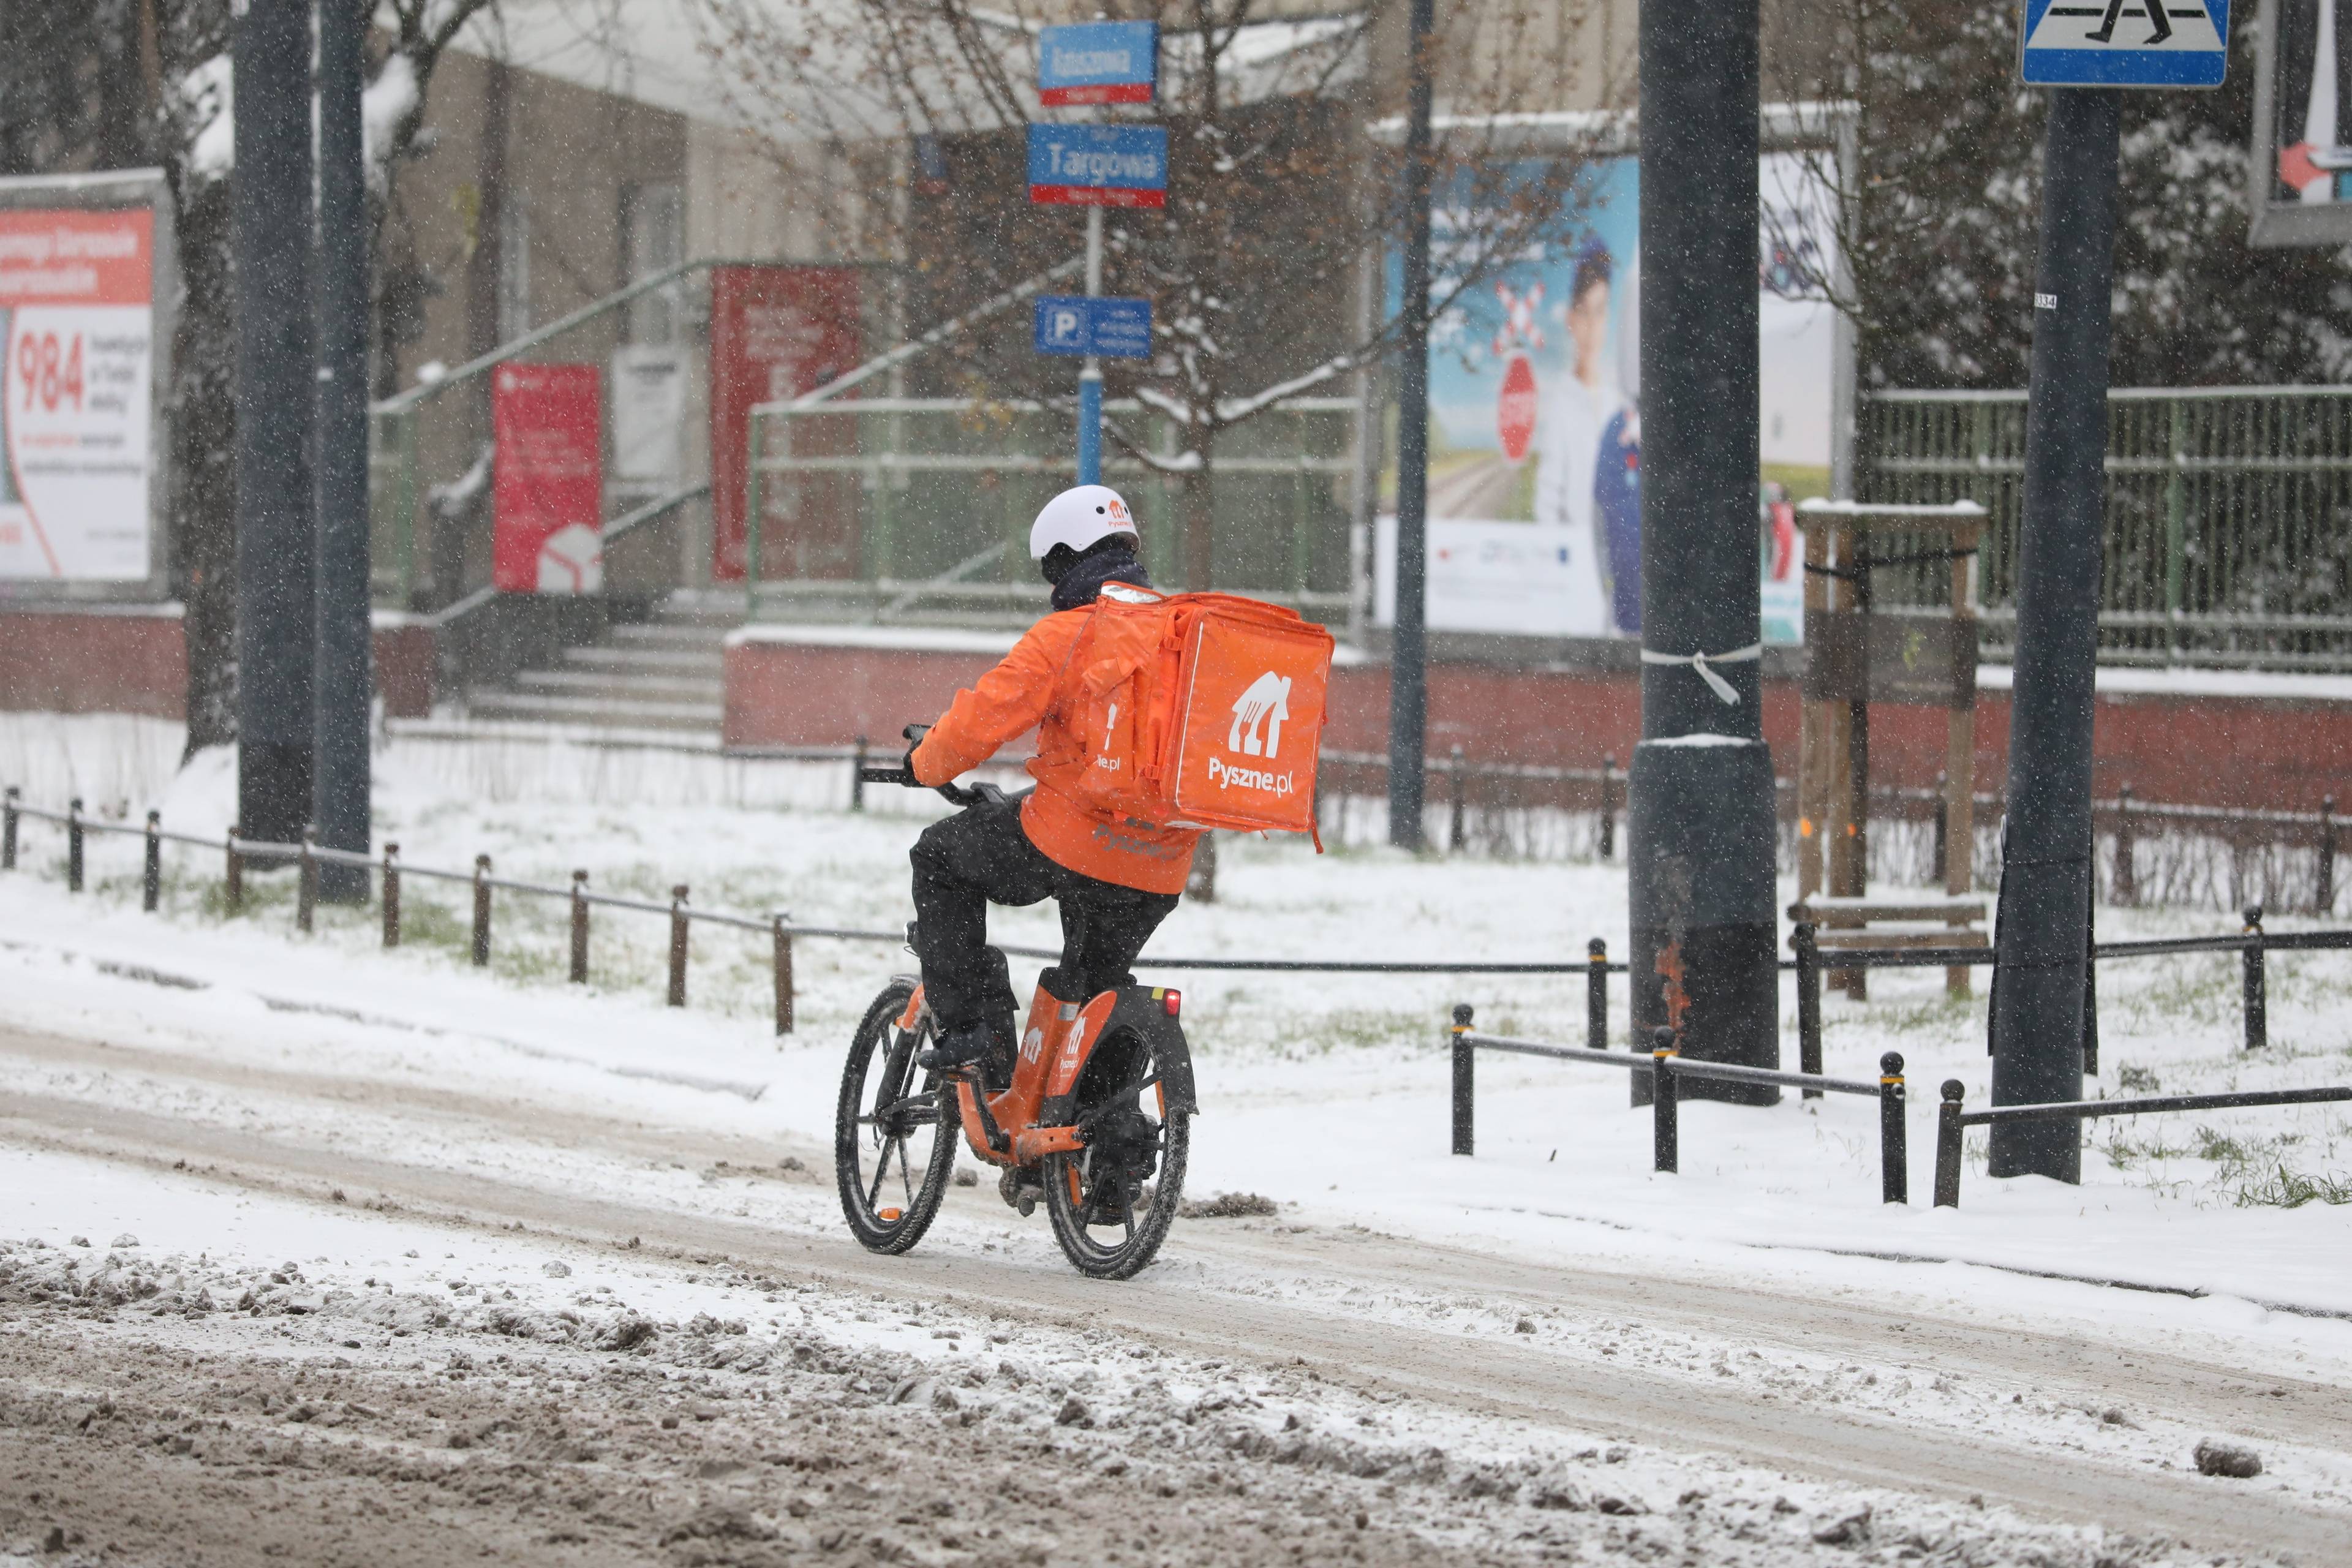 Kurier z plecakiem pyszne.pl jedzie rowerem po zaśnieżonej ulicy